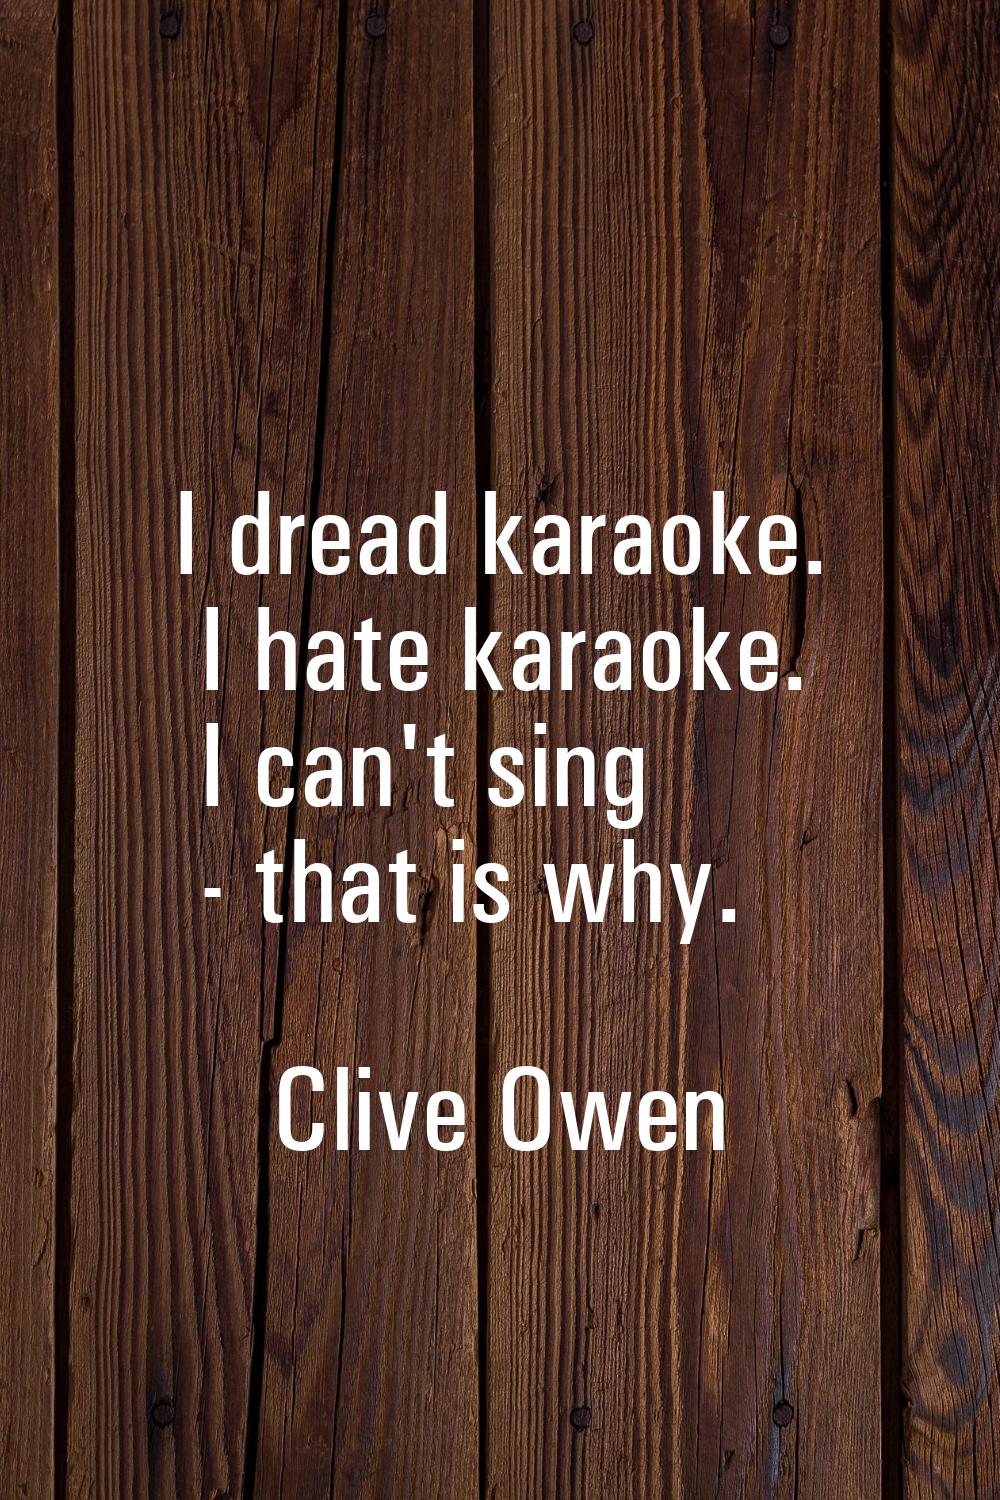 I dread karaoke. I hate karaoke. I can't sing - that is why.